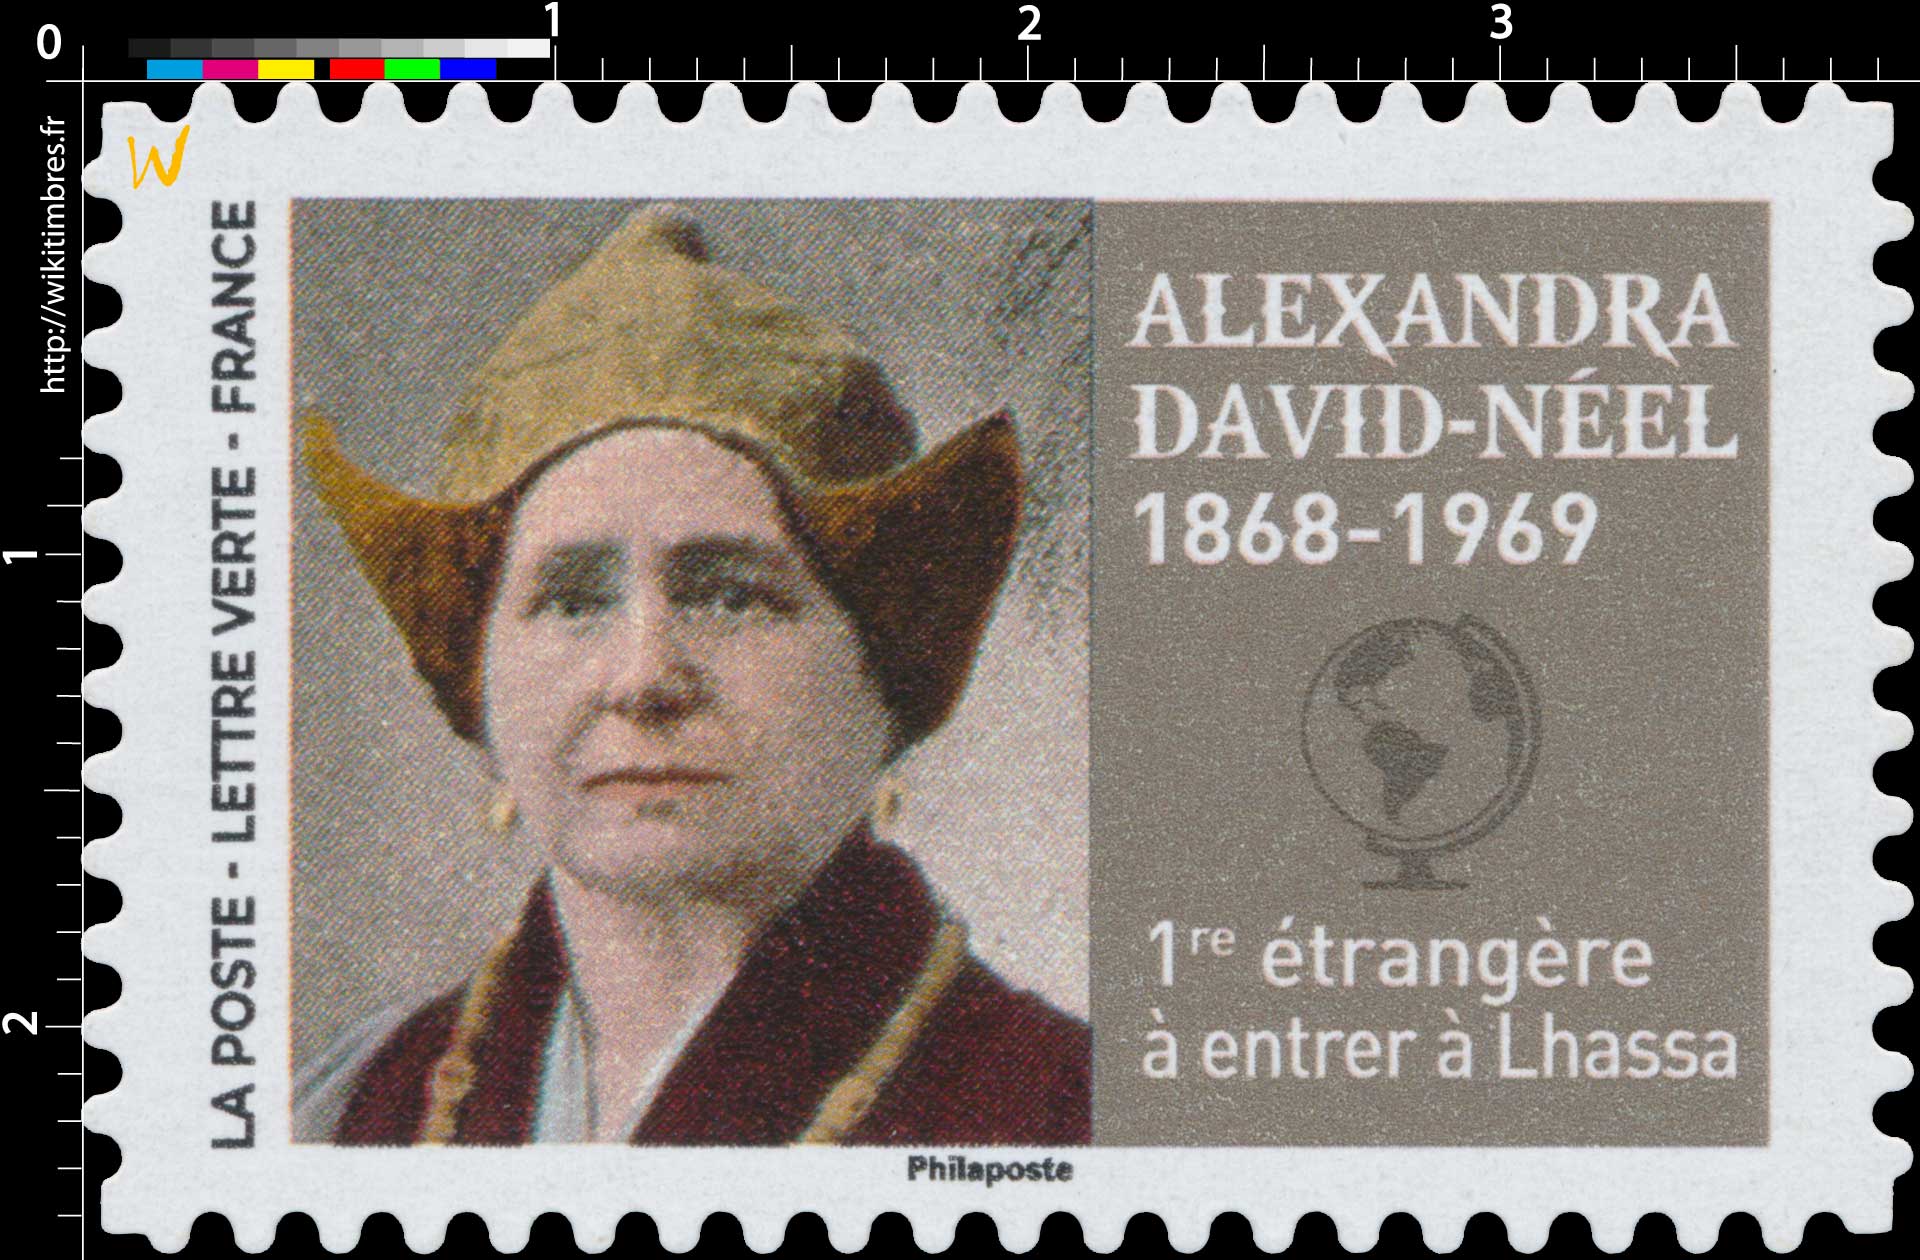 2022 Alexandra David-Néel 1868 - 1969 - 1re étrangère à entrer à Lhassa